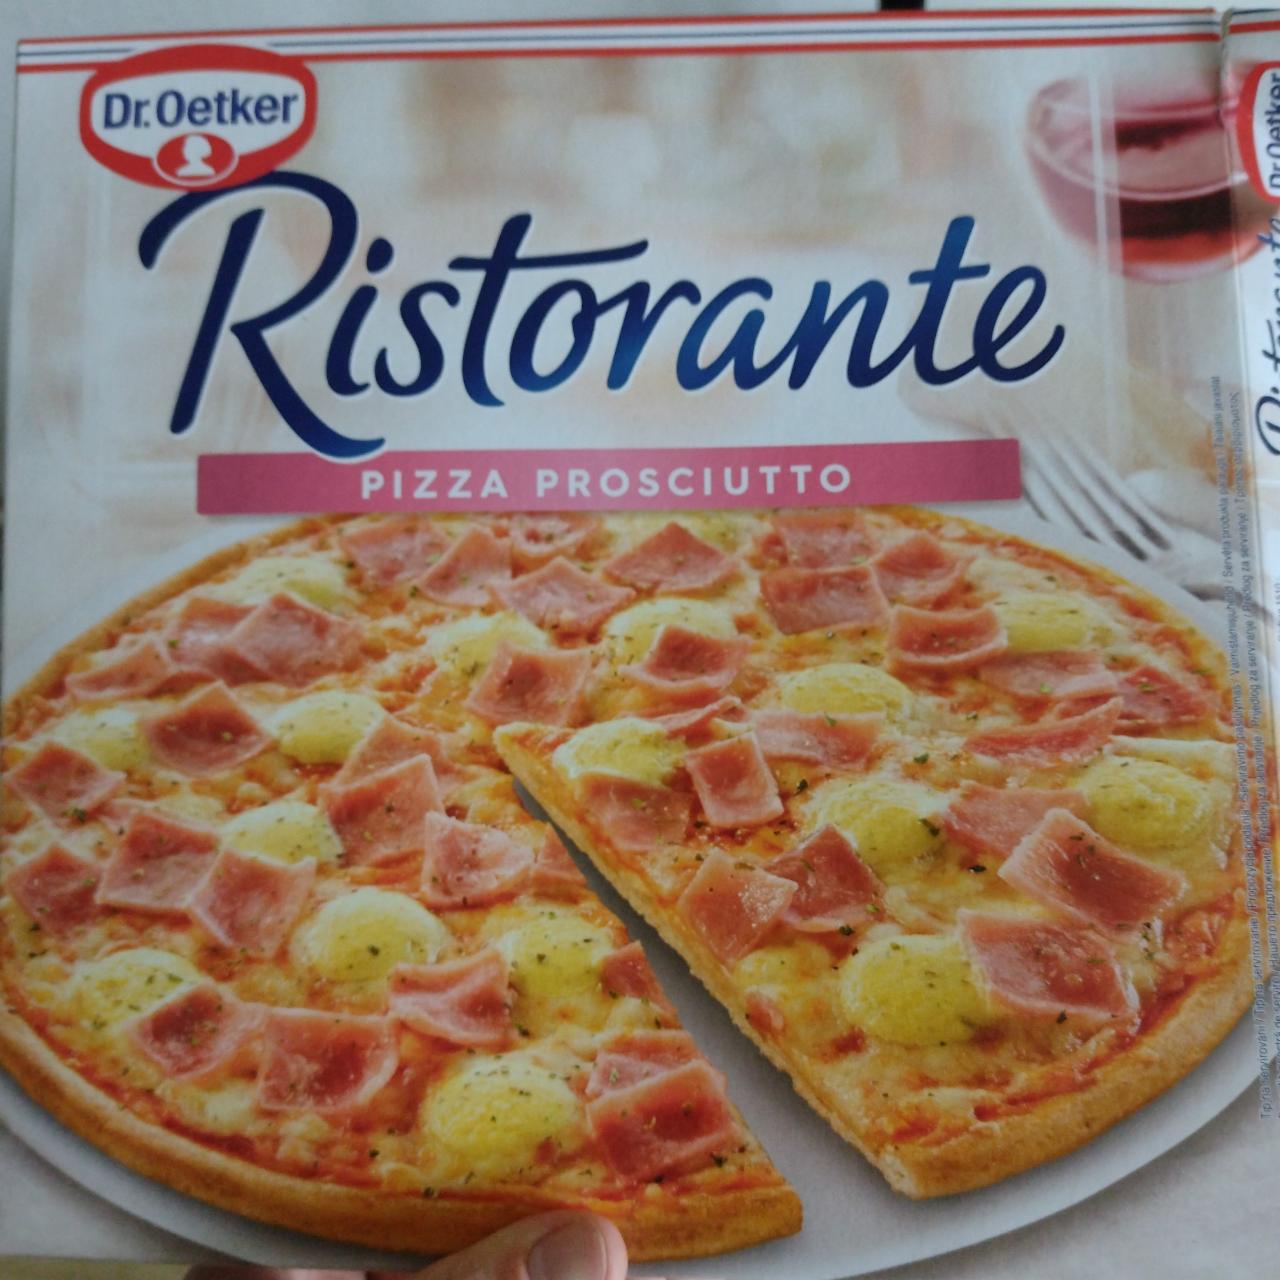 Fotografie - Ristorante Pizza prosciutto Dr.Oetker